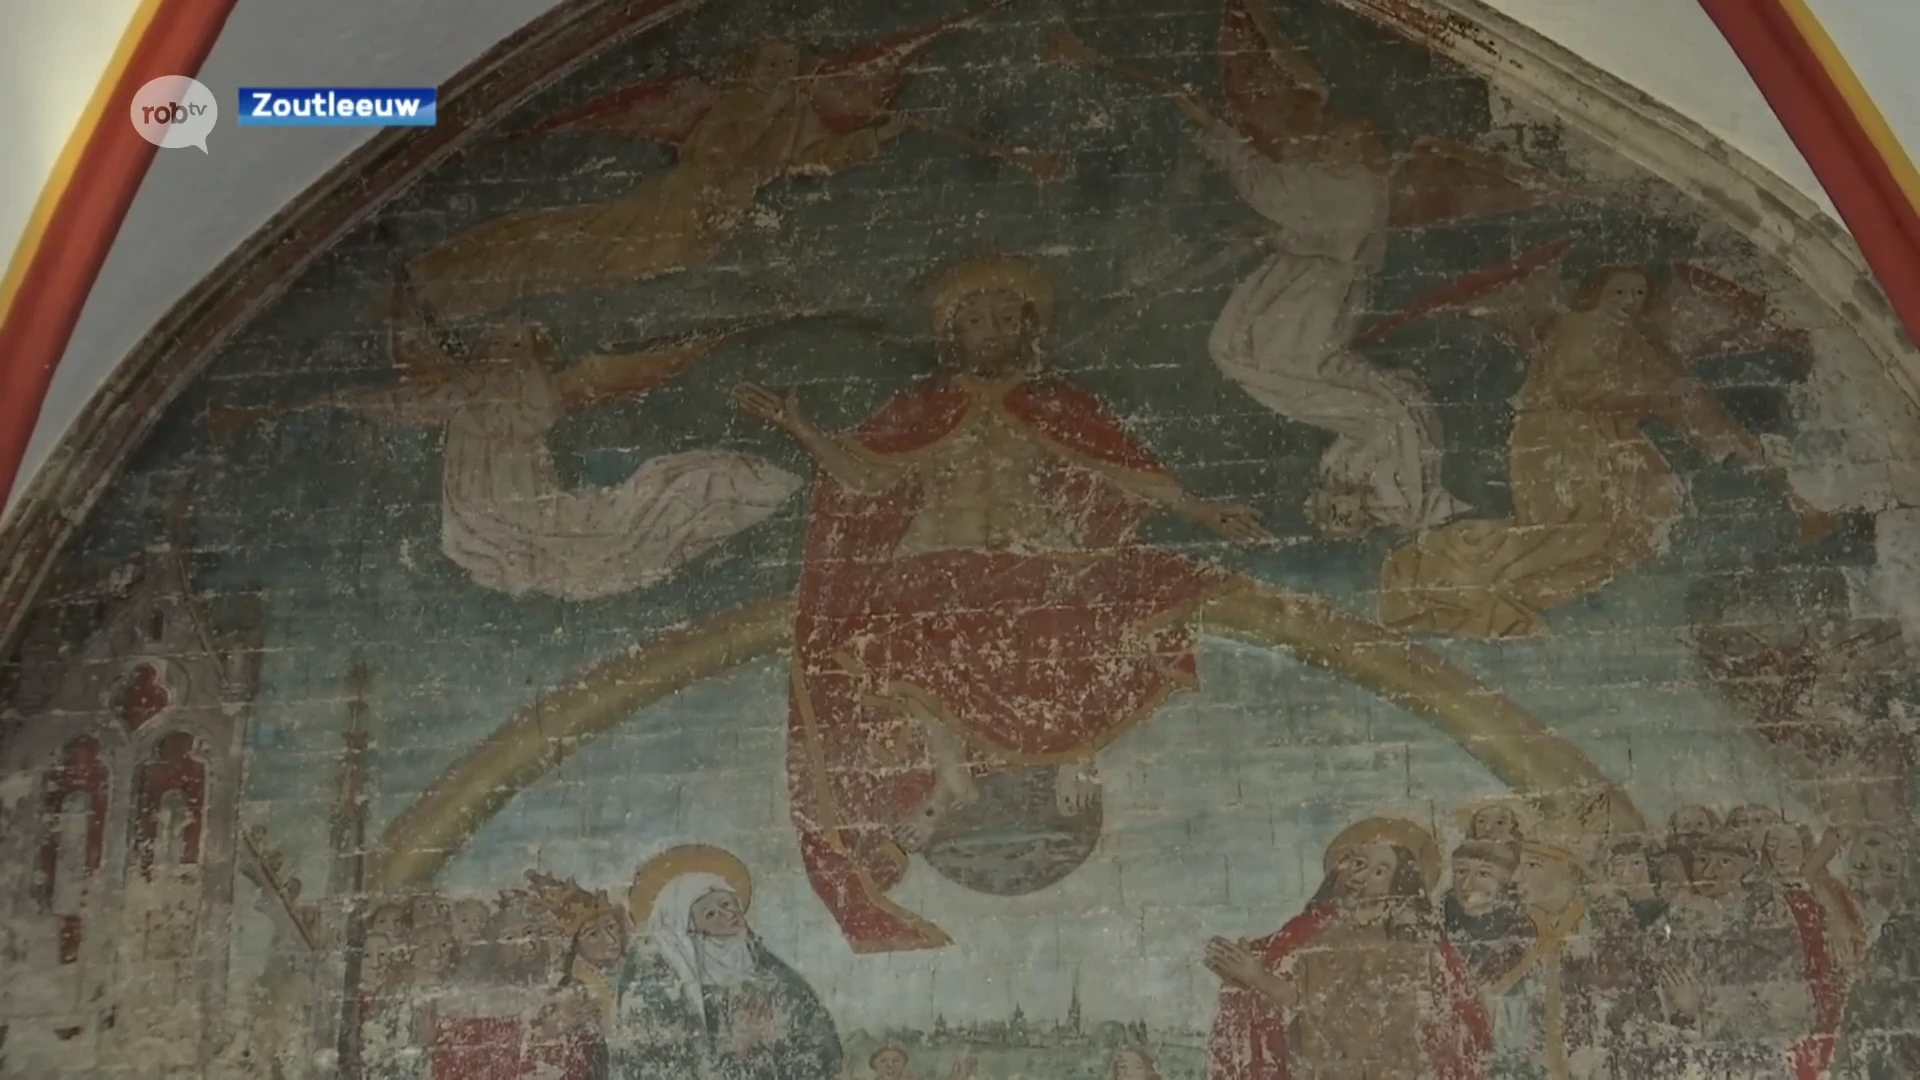 Conservator Sint-Leonarduskerk blij met subsidie om muurschildering te restaureren: "We waren bezorgd"